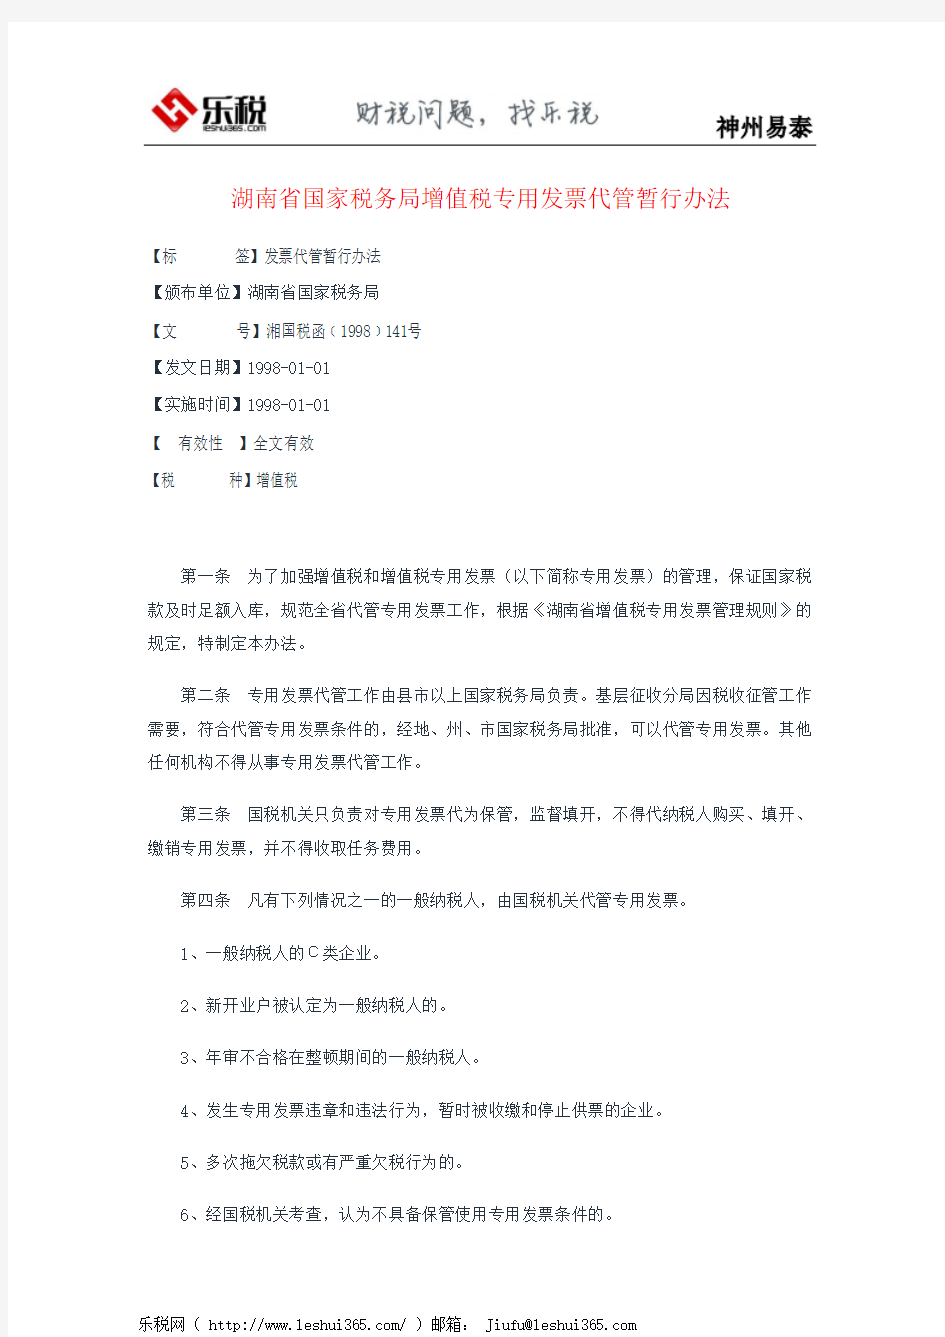 湖南省国家税务局增值税专用发票代管暂行办法